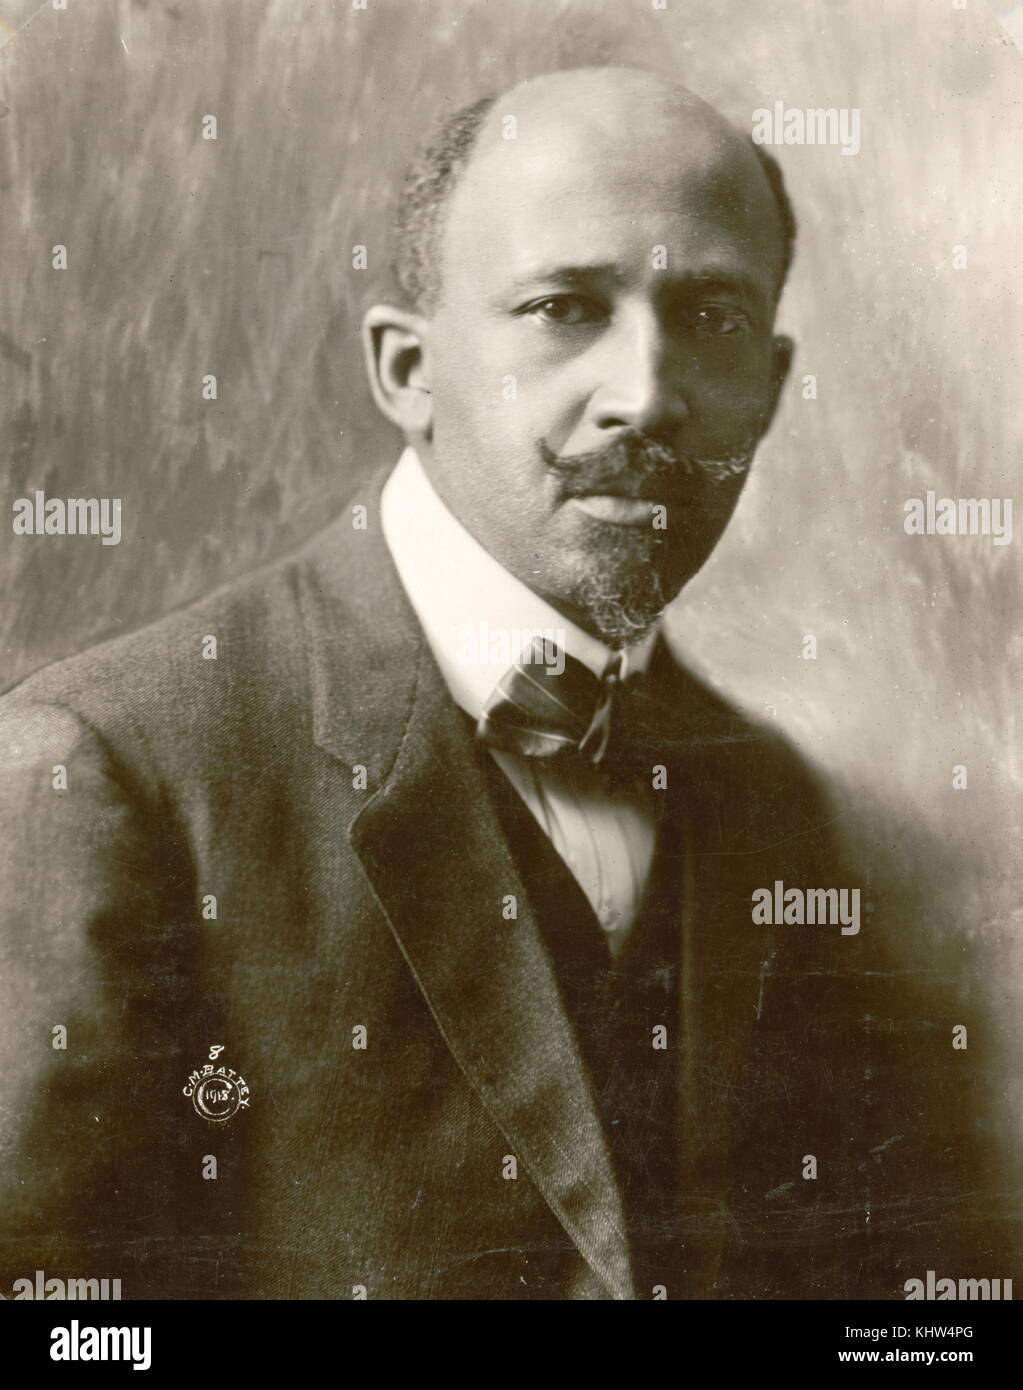 Photographie de W. E. B. Du Bois (1868-1963) un sociologue, historien, activiste des droits civils, de l'auteur, panafricaniste, écrivain et éditeur. En date du 20e siècle Banque D'Images